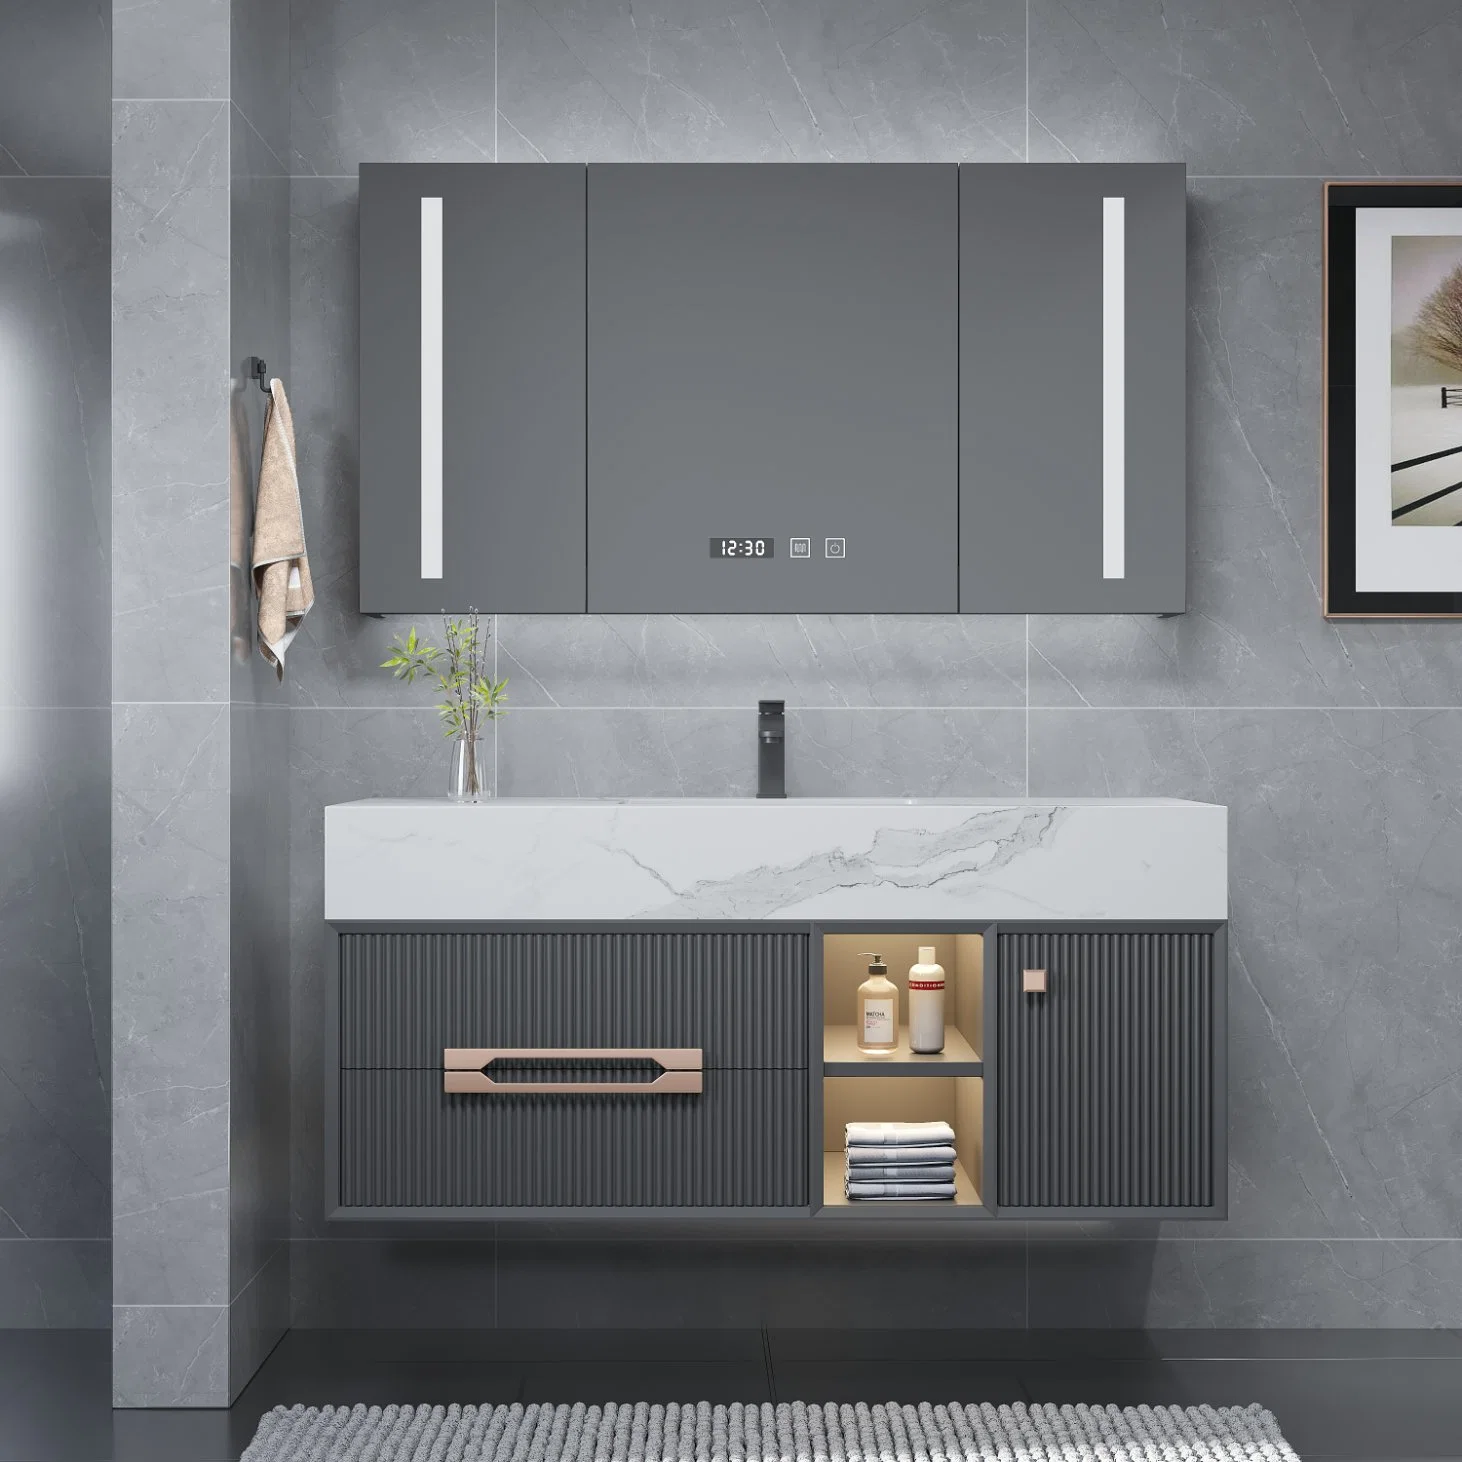 Novo design moderno de cor cinza montado na parede espelho iluminado LED banheiro armário de toucador com placa de pedra e mármore dissipador topo